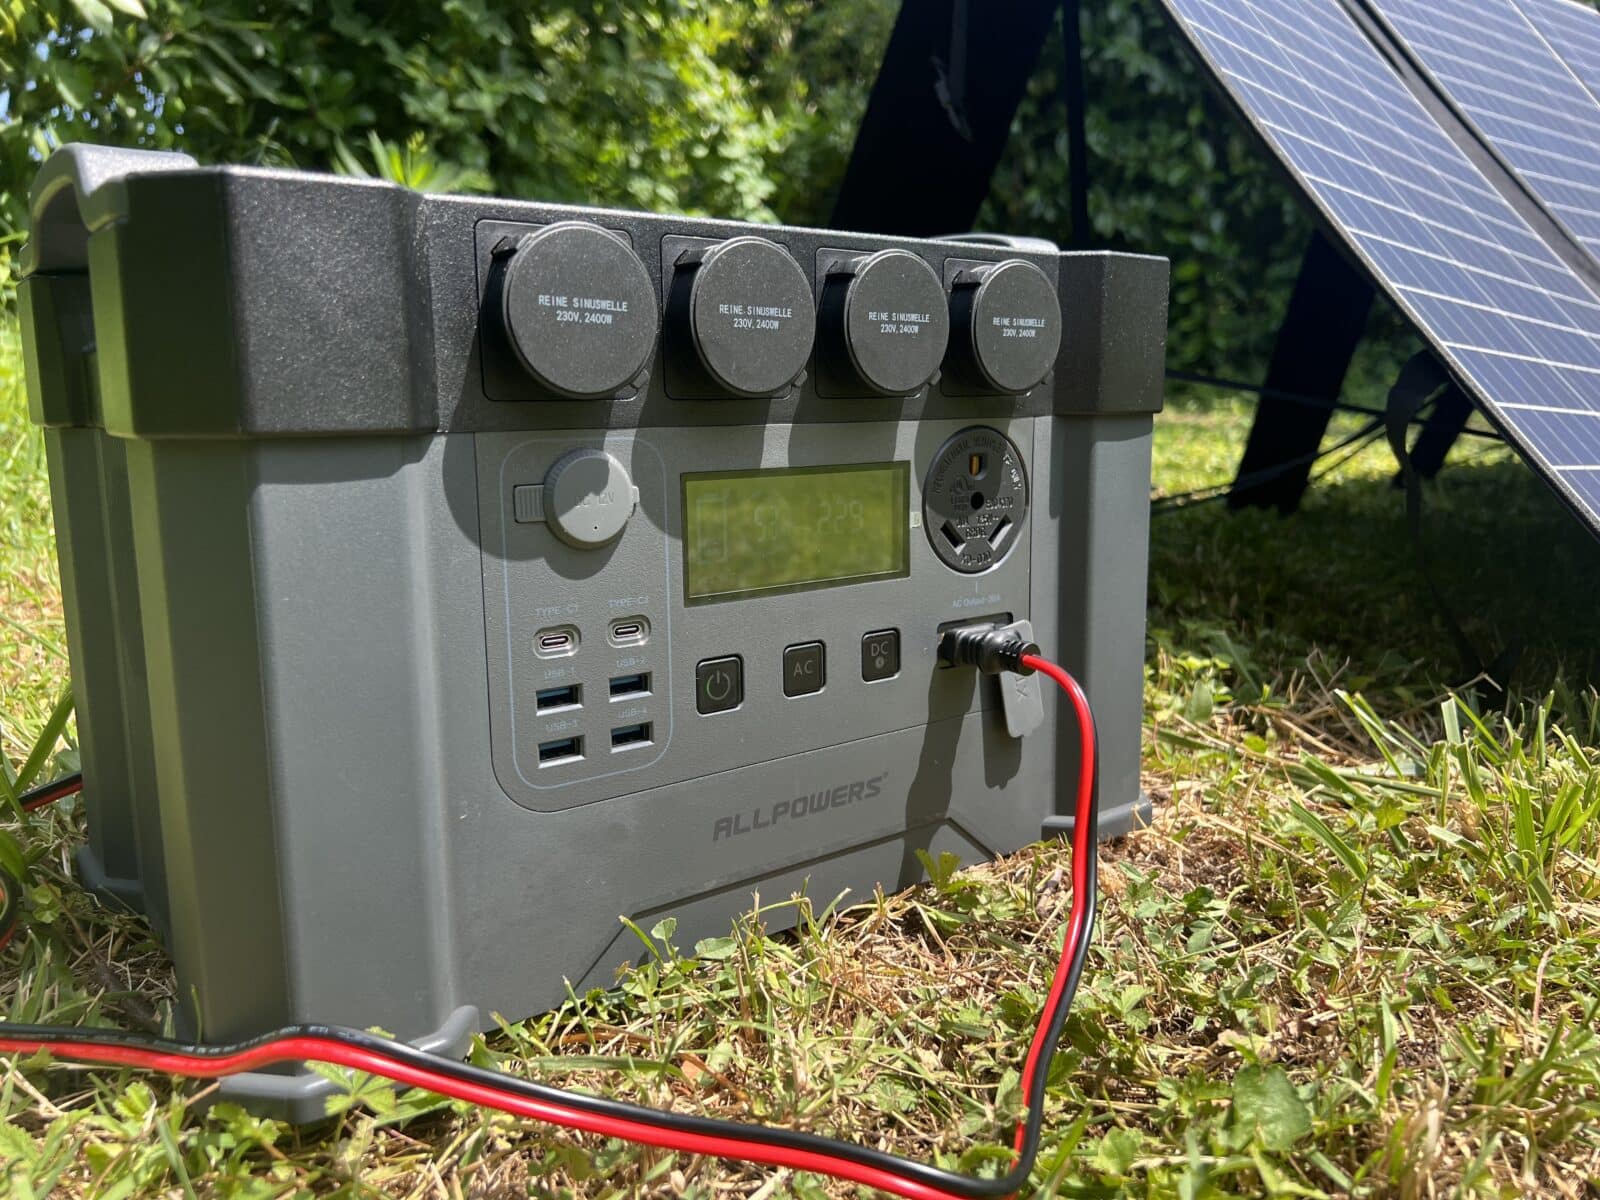 Vue de la batterie ALLPOWERS S2000 Pro posée sur l'herbe, connectée à un panneau solaire pour la recharge en plein air